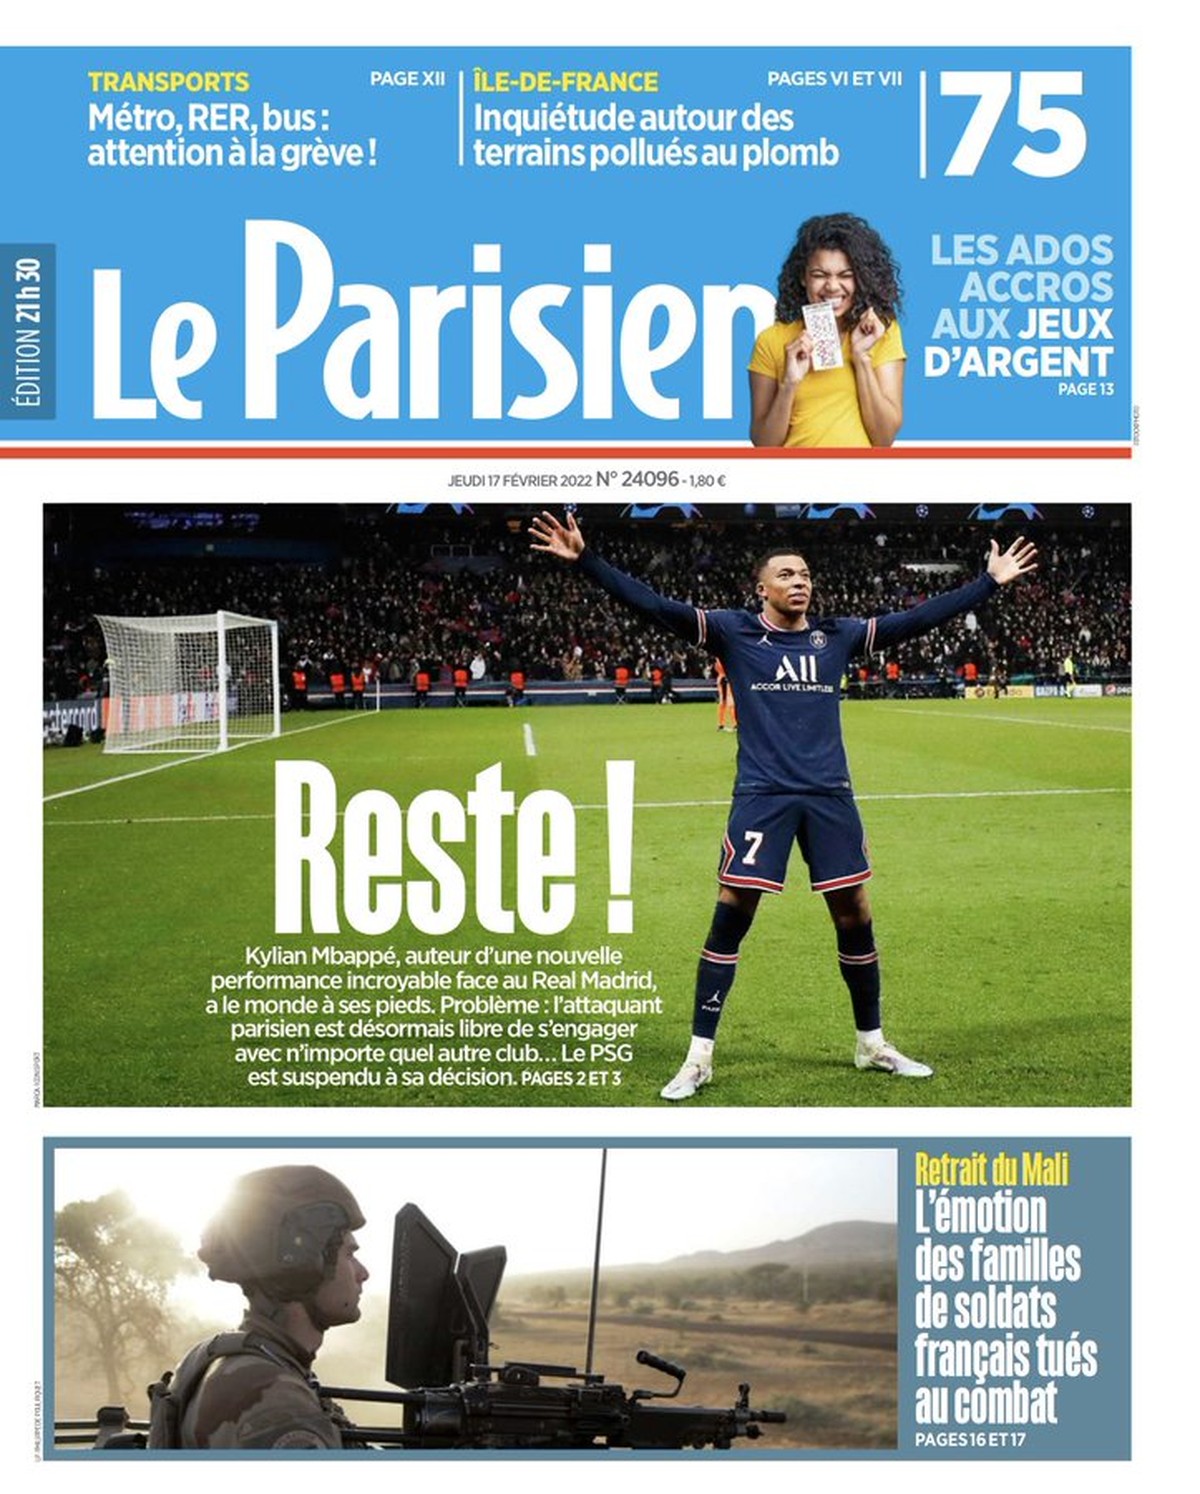 Le PSG tente de convaincre Mbappé de rester, mais la star a déjà refusé deux offres de prolongation, selon le journal |  football français